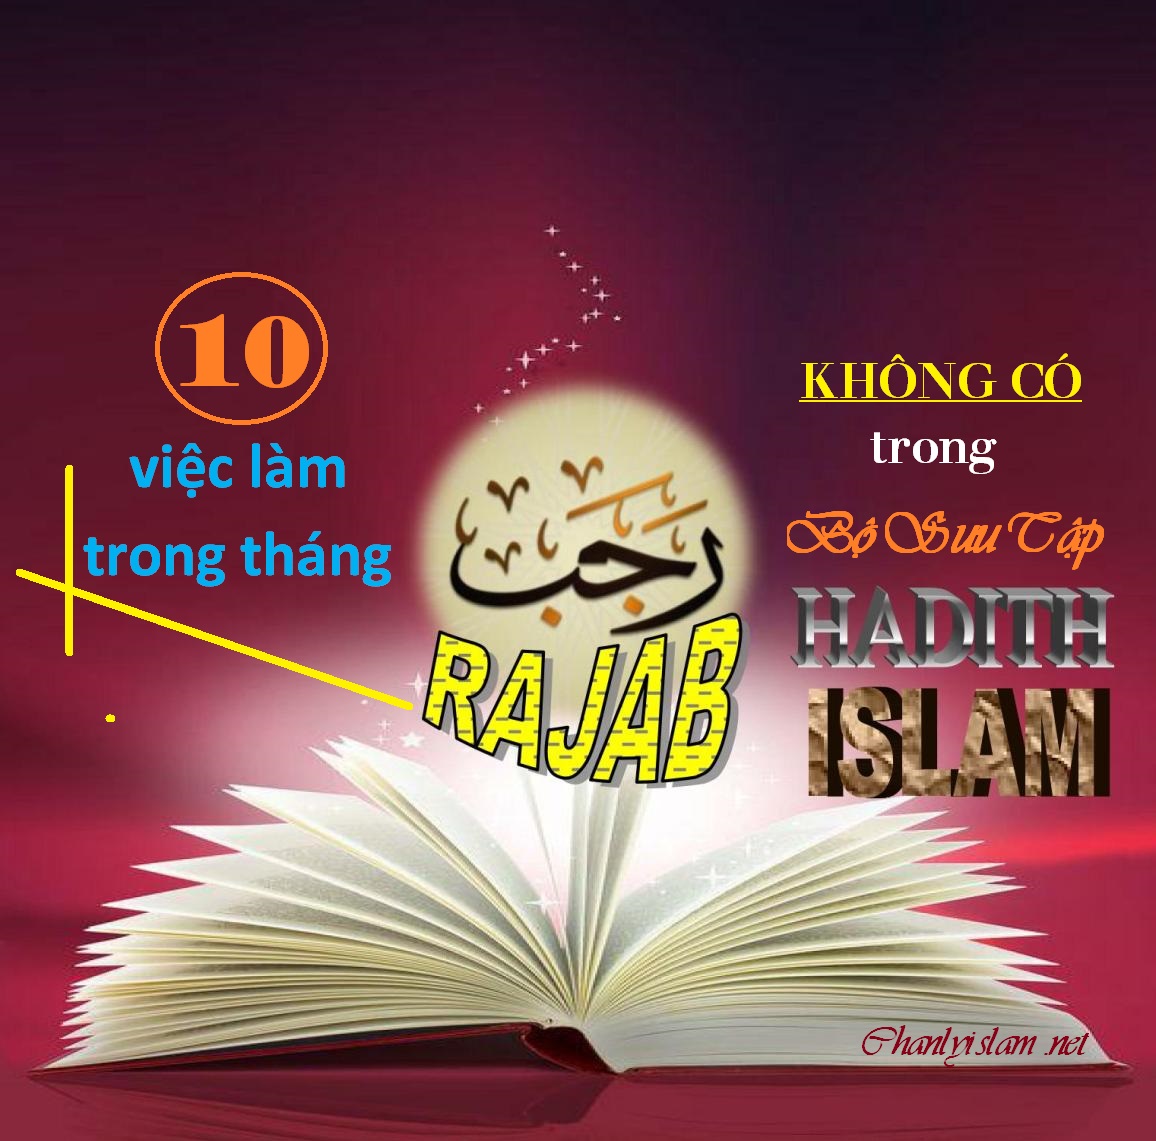 BÀI VIẾT VÀ THUYẾT GIẢNG AUDIO: “10 VIỆC LÀM TRONG THÁNG RAJAB KHÔNG CÓ TRONG BỘ SƯU TẬP HADITH ISLAM